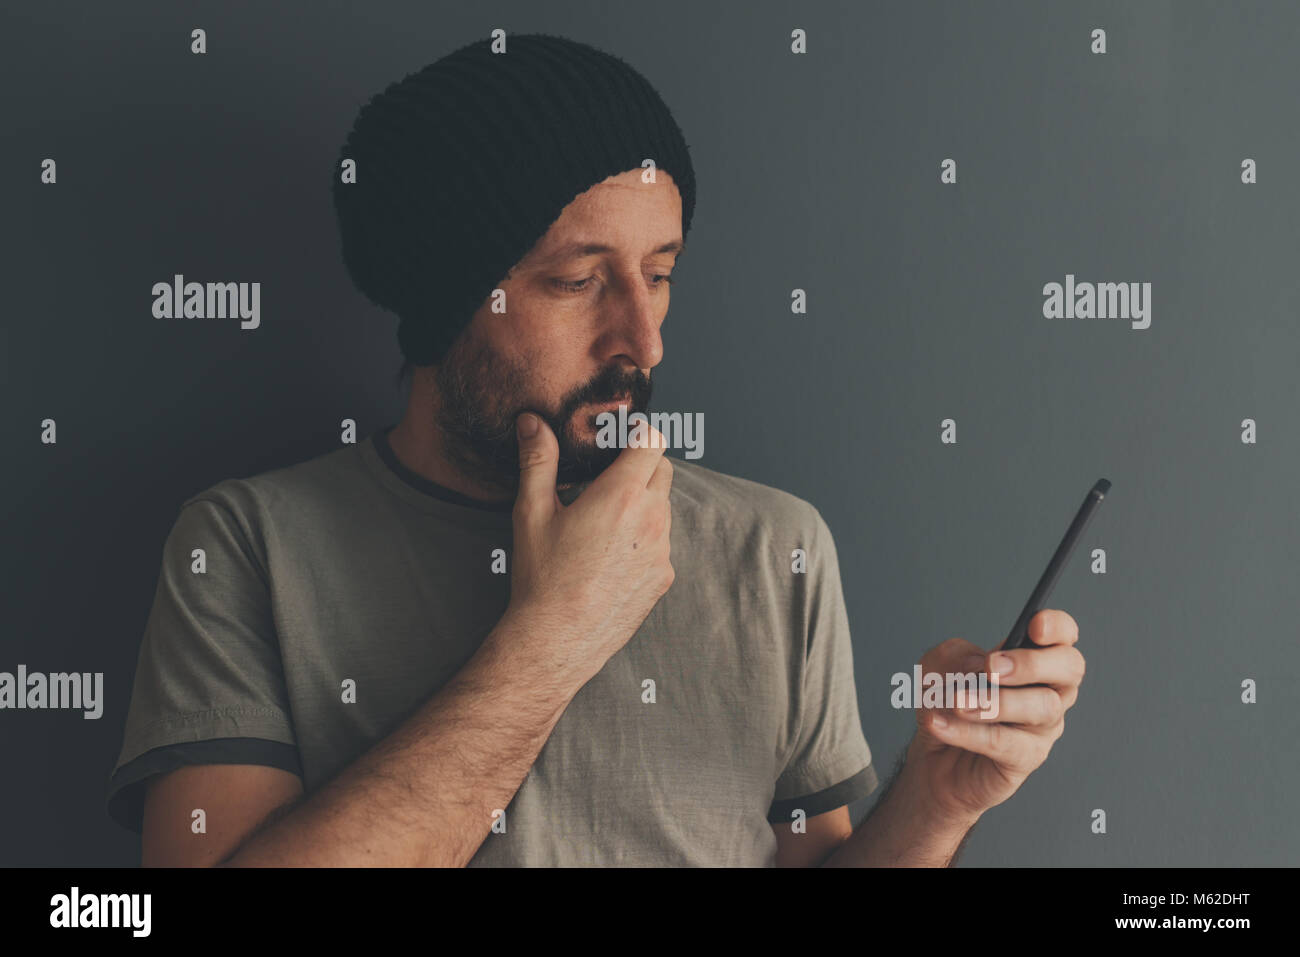 Casual erwachsenen Mann mit Kappe am Handy suchen, Low Key Kommunikation und Lifestyle Portrait mit selektiven Fokus Stockfoto